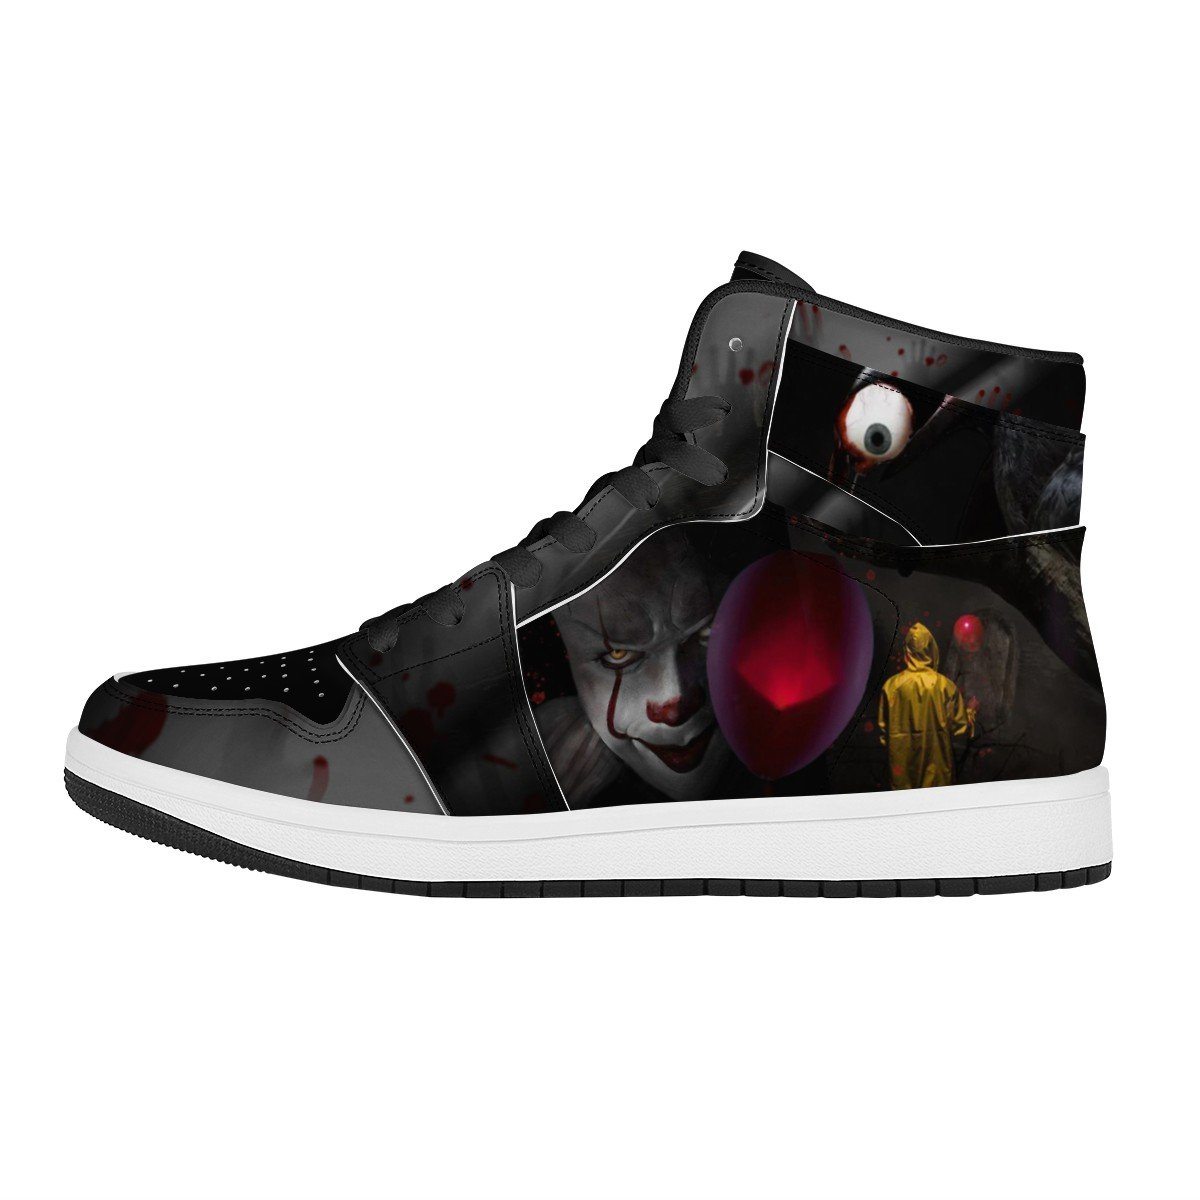 It High Top Leather Sneaker Custom Jordan 1, Horror, Pennywise noxfan Women US5.5 (EU36) 